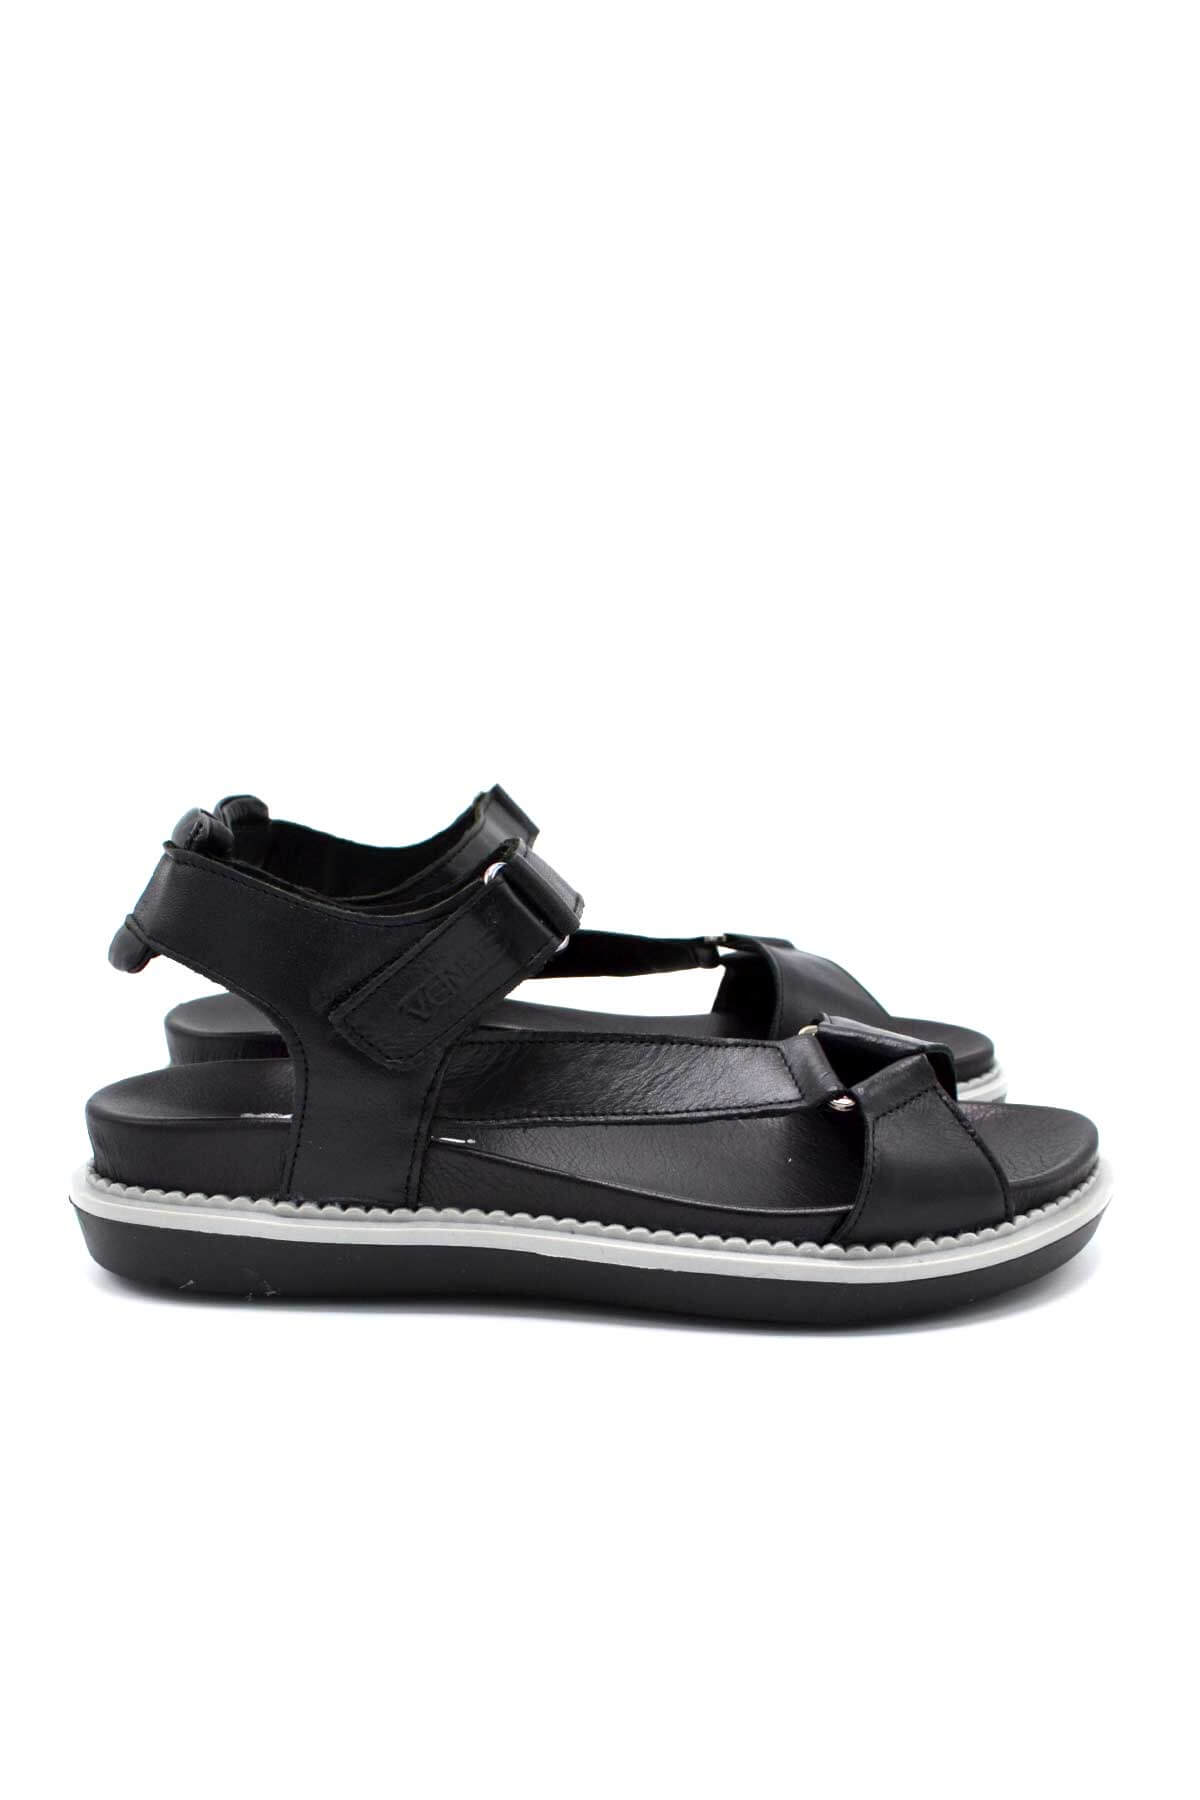 Kadın Comfort Deri Sandalet Siyah 202064Y